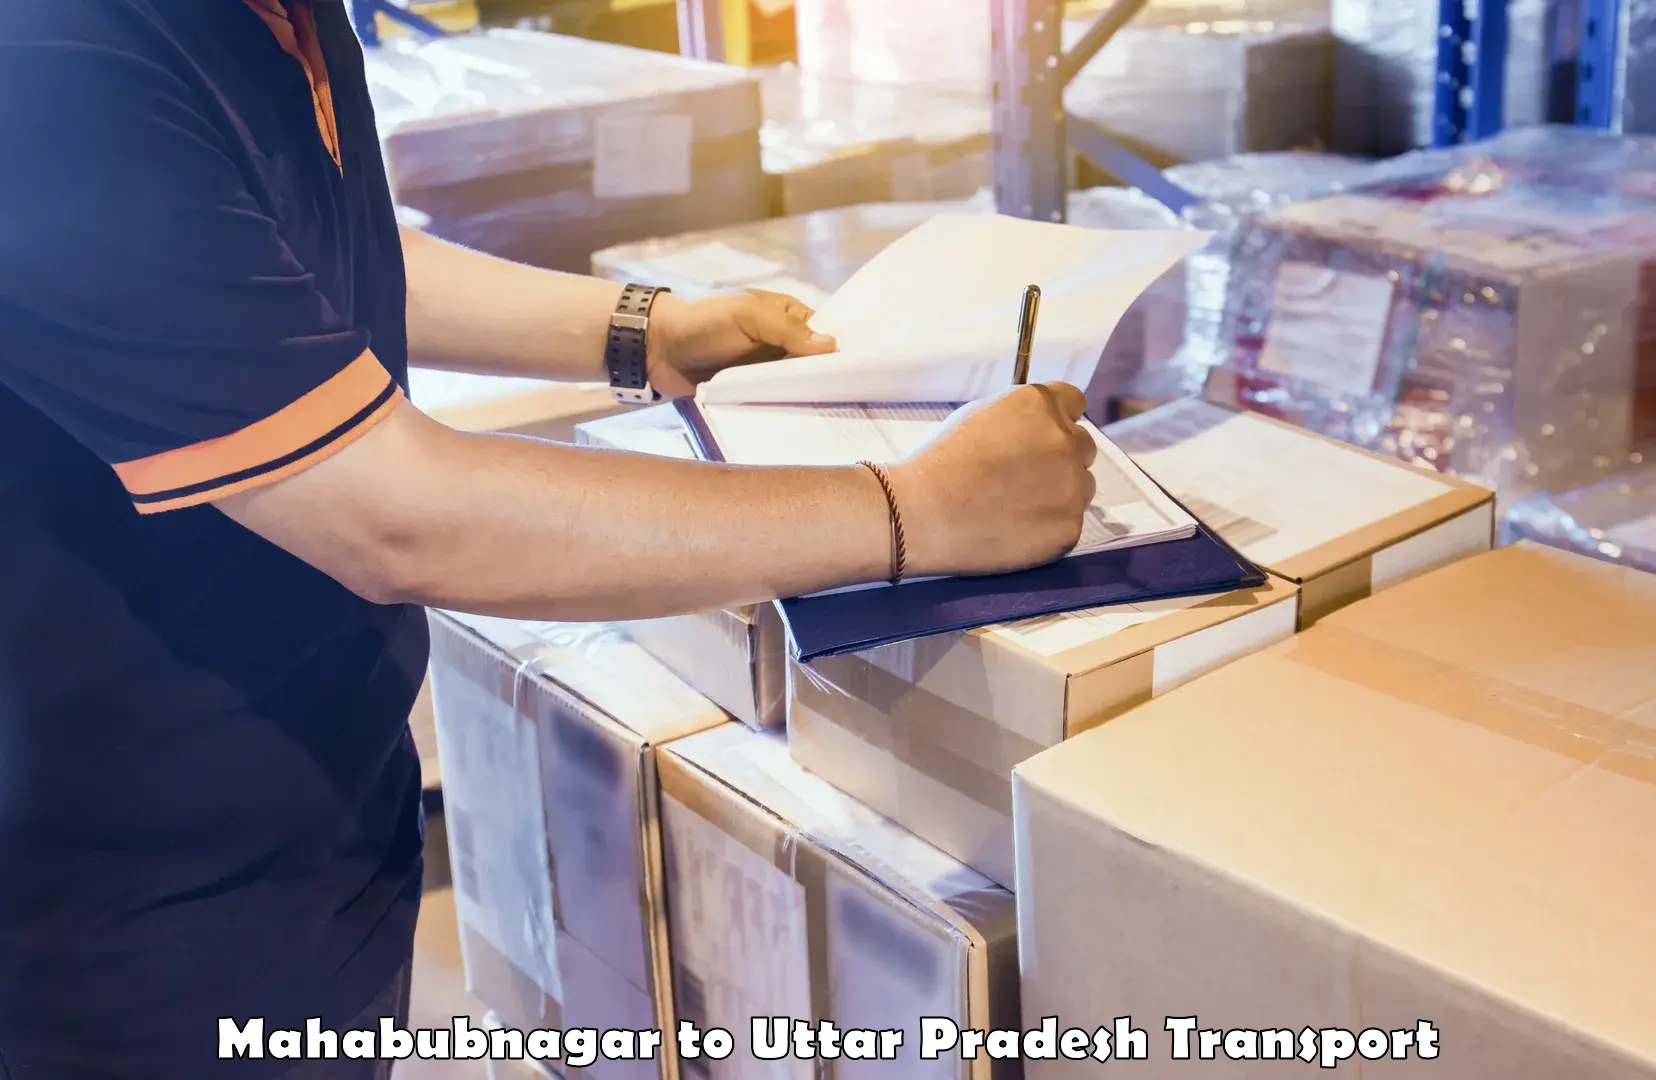 International cargo transportation services Mahabubnagar to Uttar Pradesh